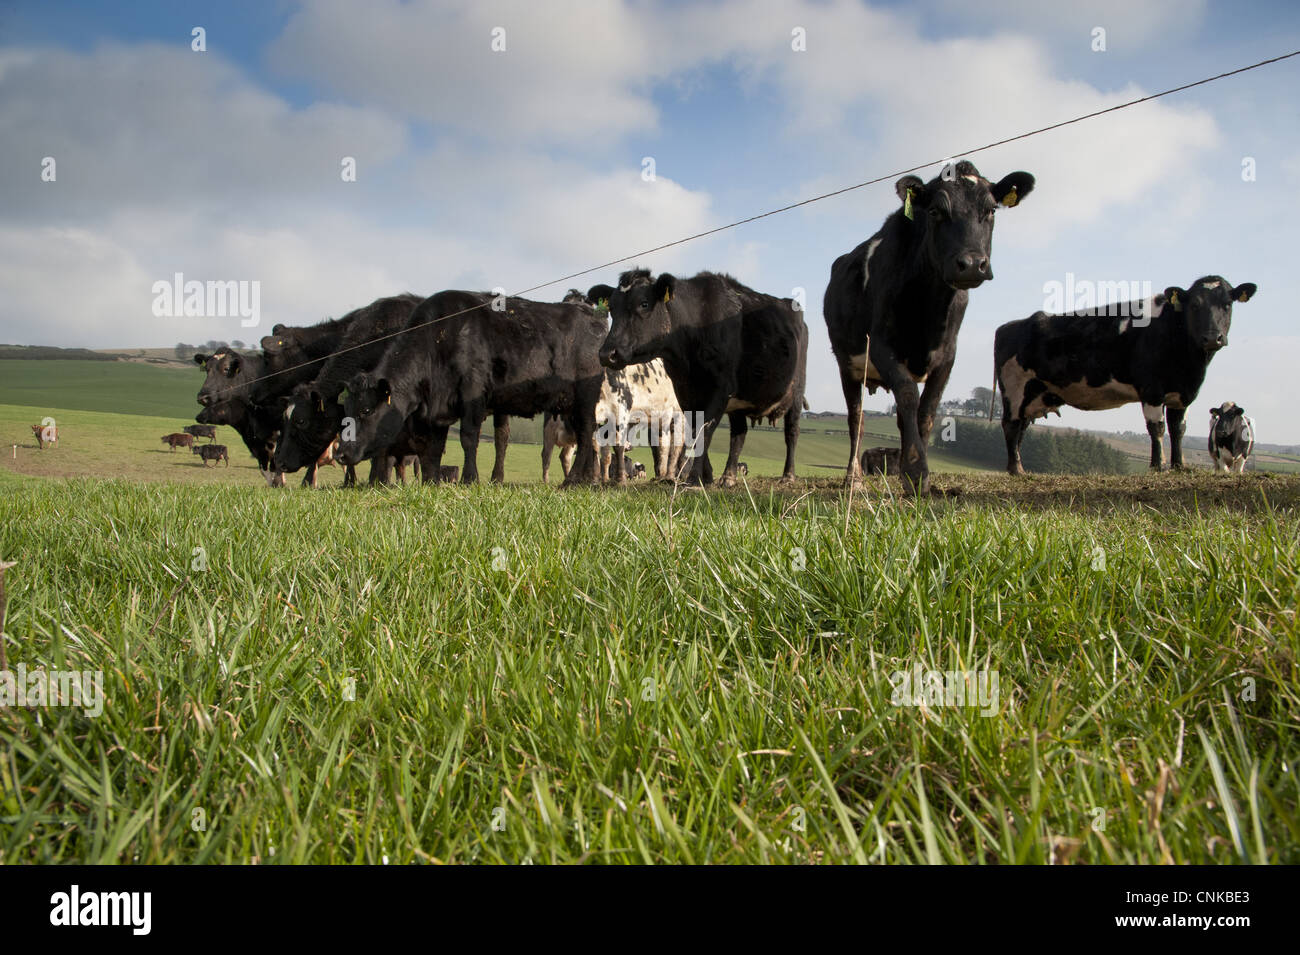 Les bovins domestiques Jersey cross Noir Blanc troupeau des vaches d'élevage de pâturage pâturage de système néo-zélandais Dumfries Scotland mars Banque D'Images